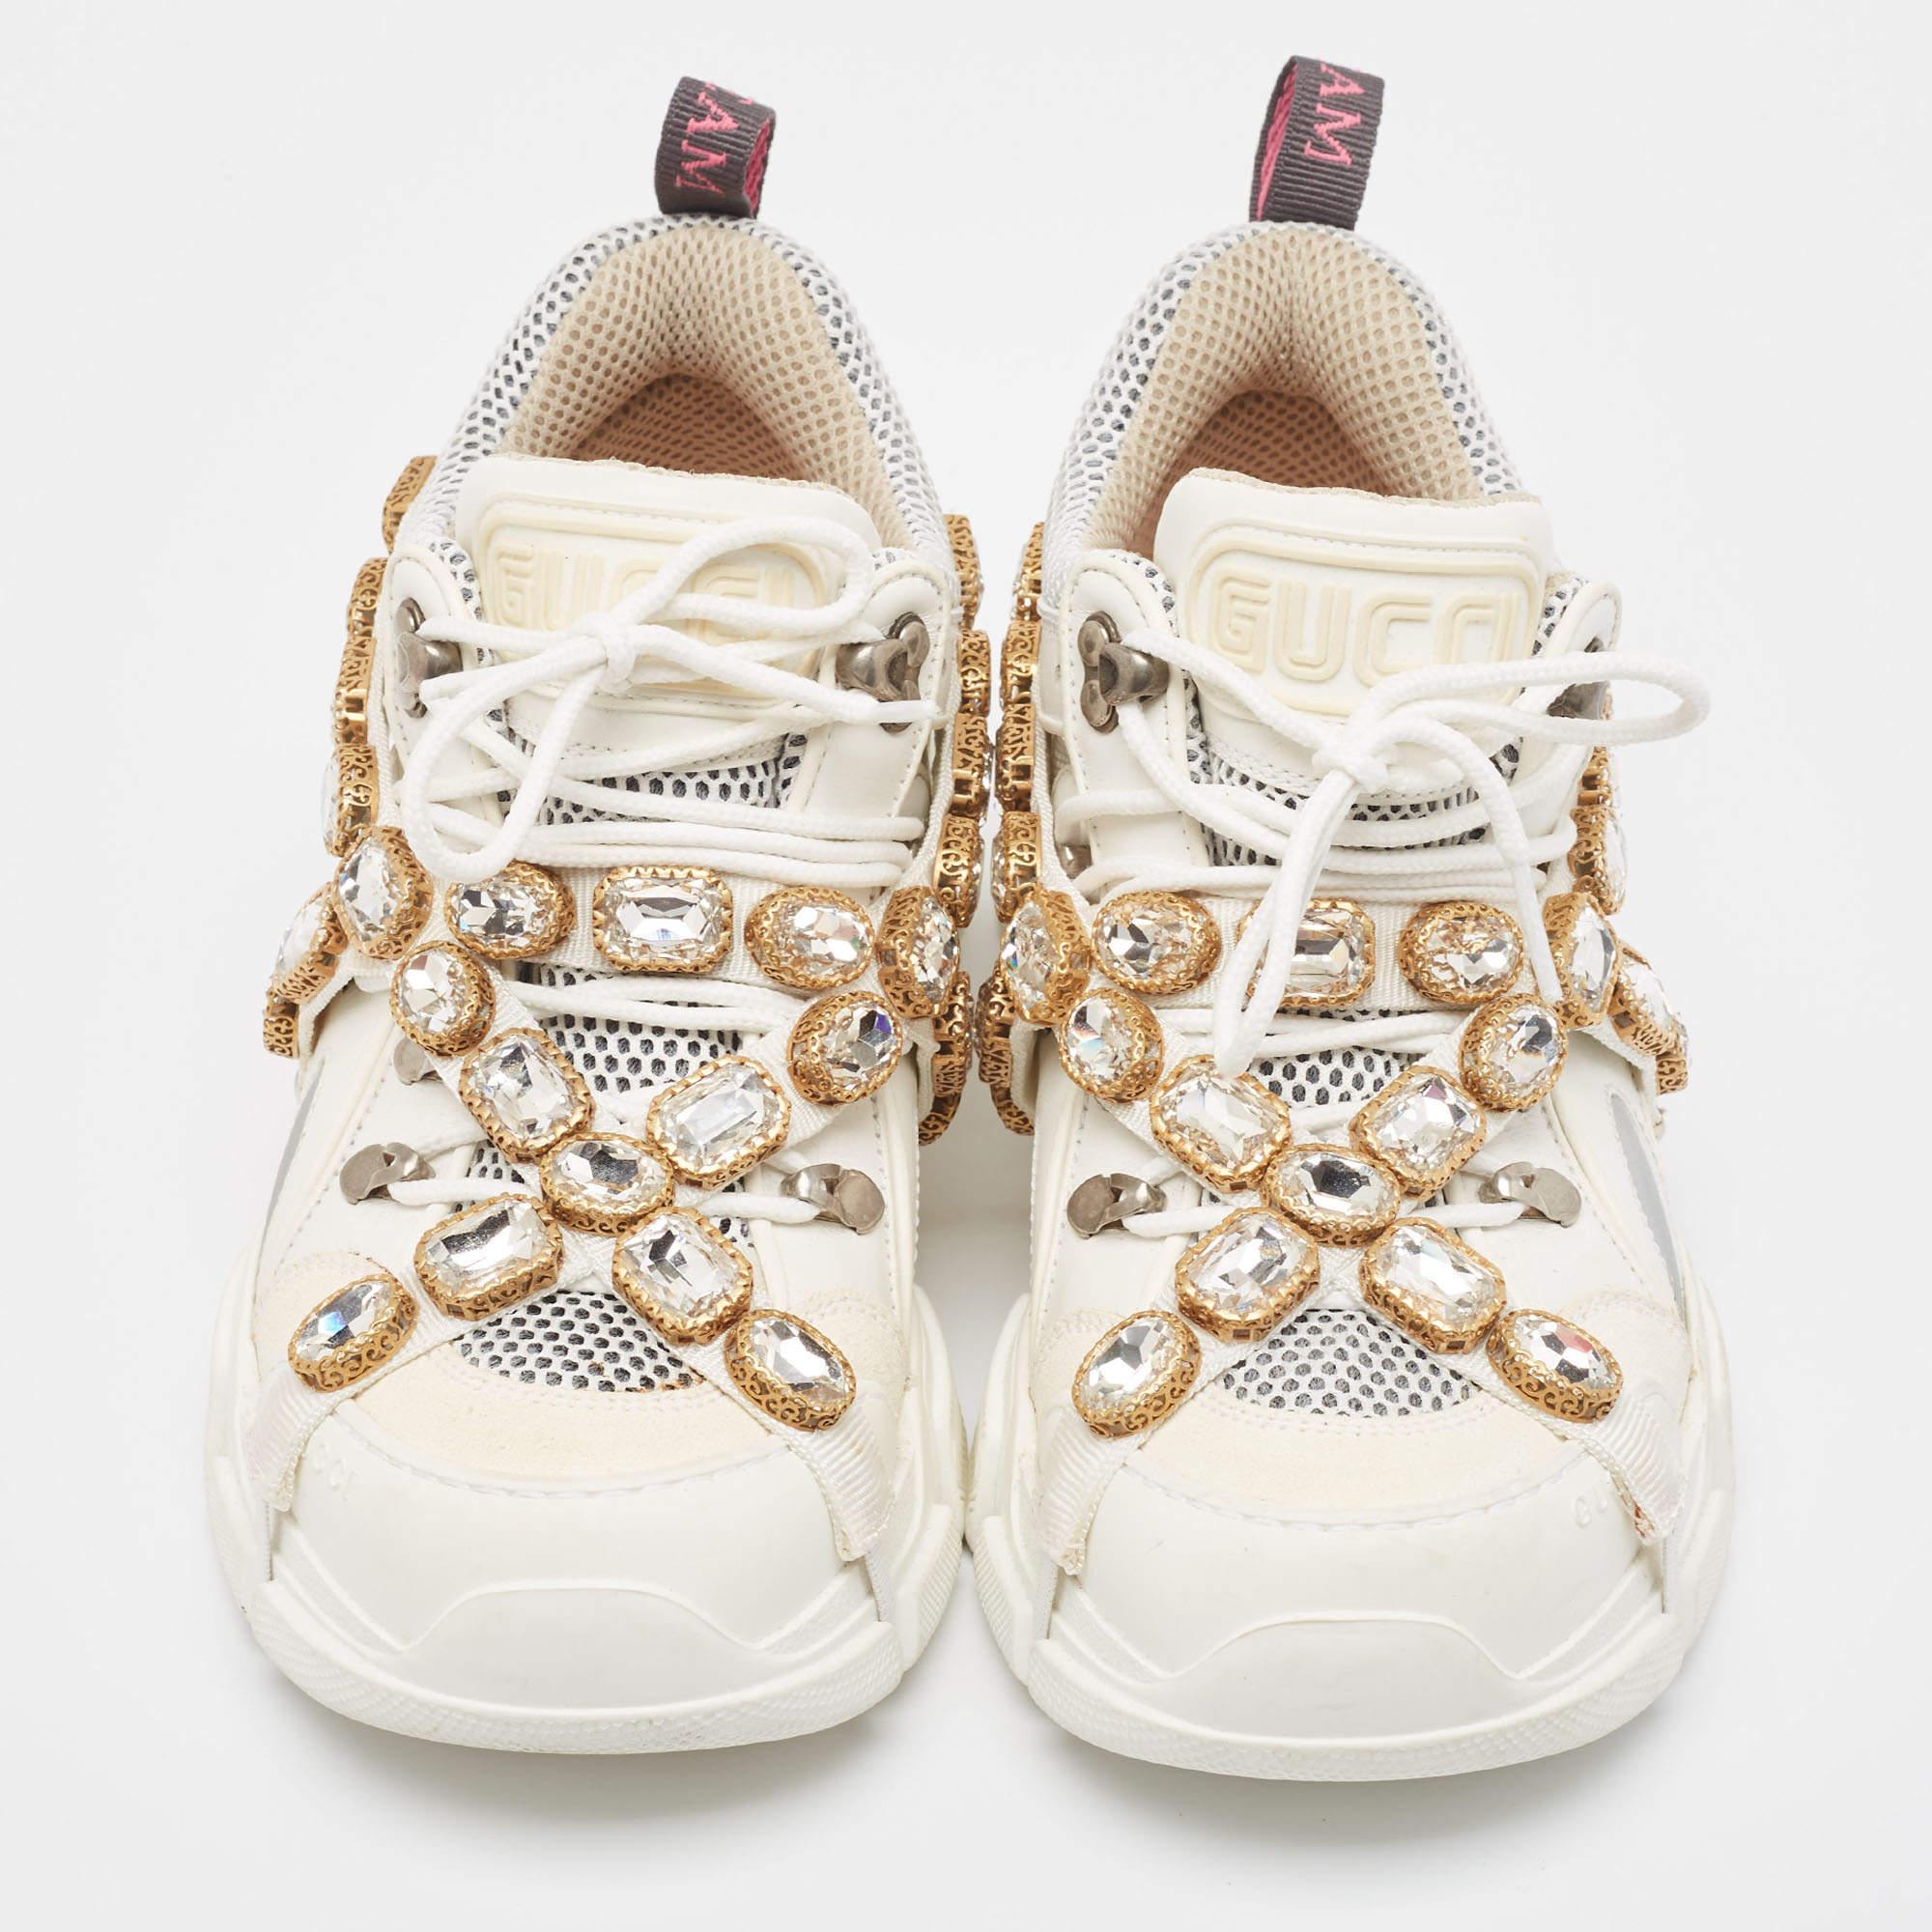 Mit diesen Gucci-Sneakern können Sie Ihr Schuhwerk aufwerten. Die Kombination aus hochwertiger Ästhetik und unvergleichlichem Komfort macht diese Sneaker zu einem Symbol für modernen Luxus und tadellosen Geschmack.

